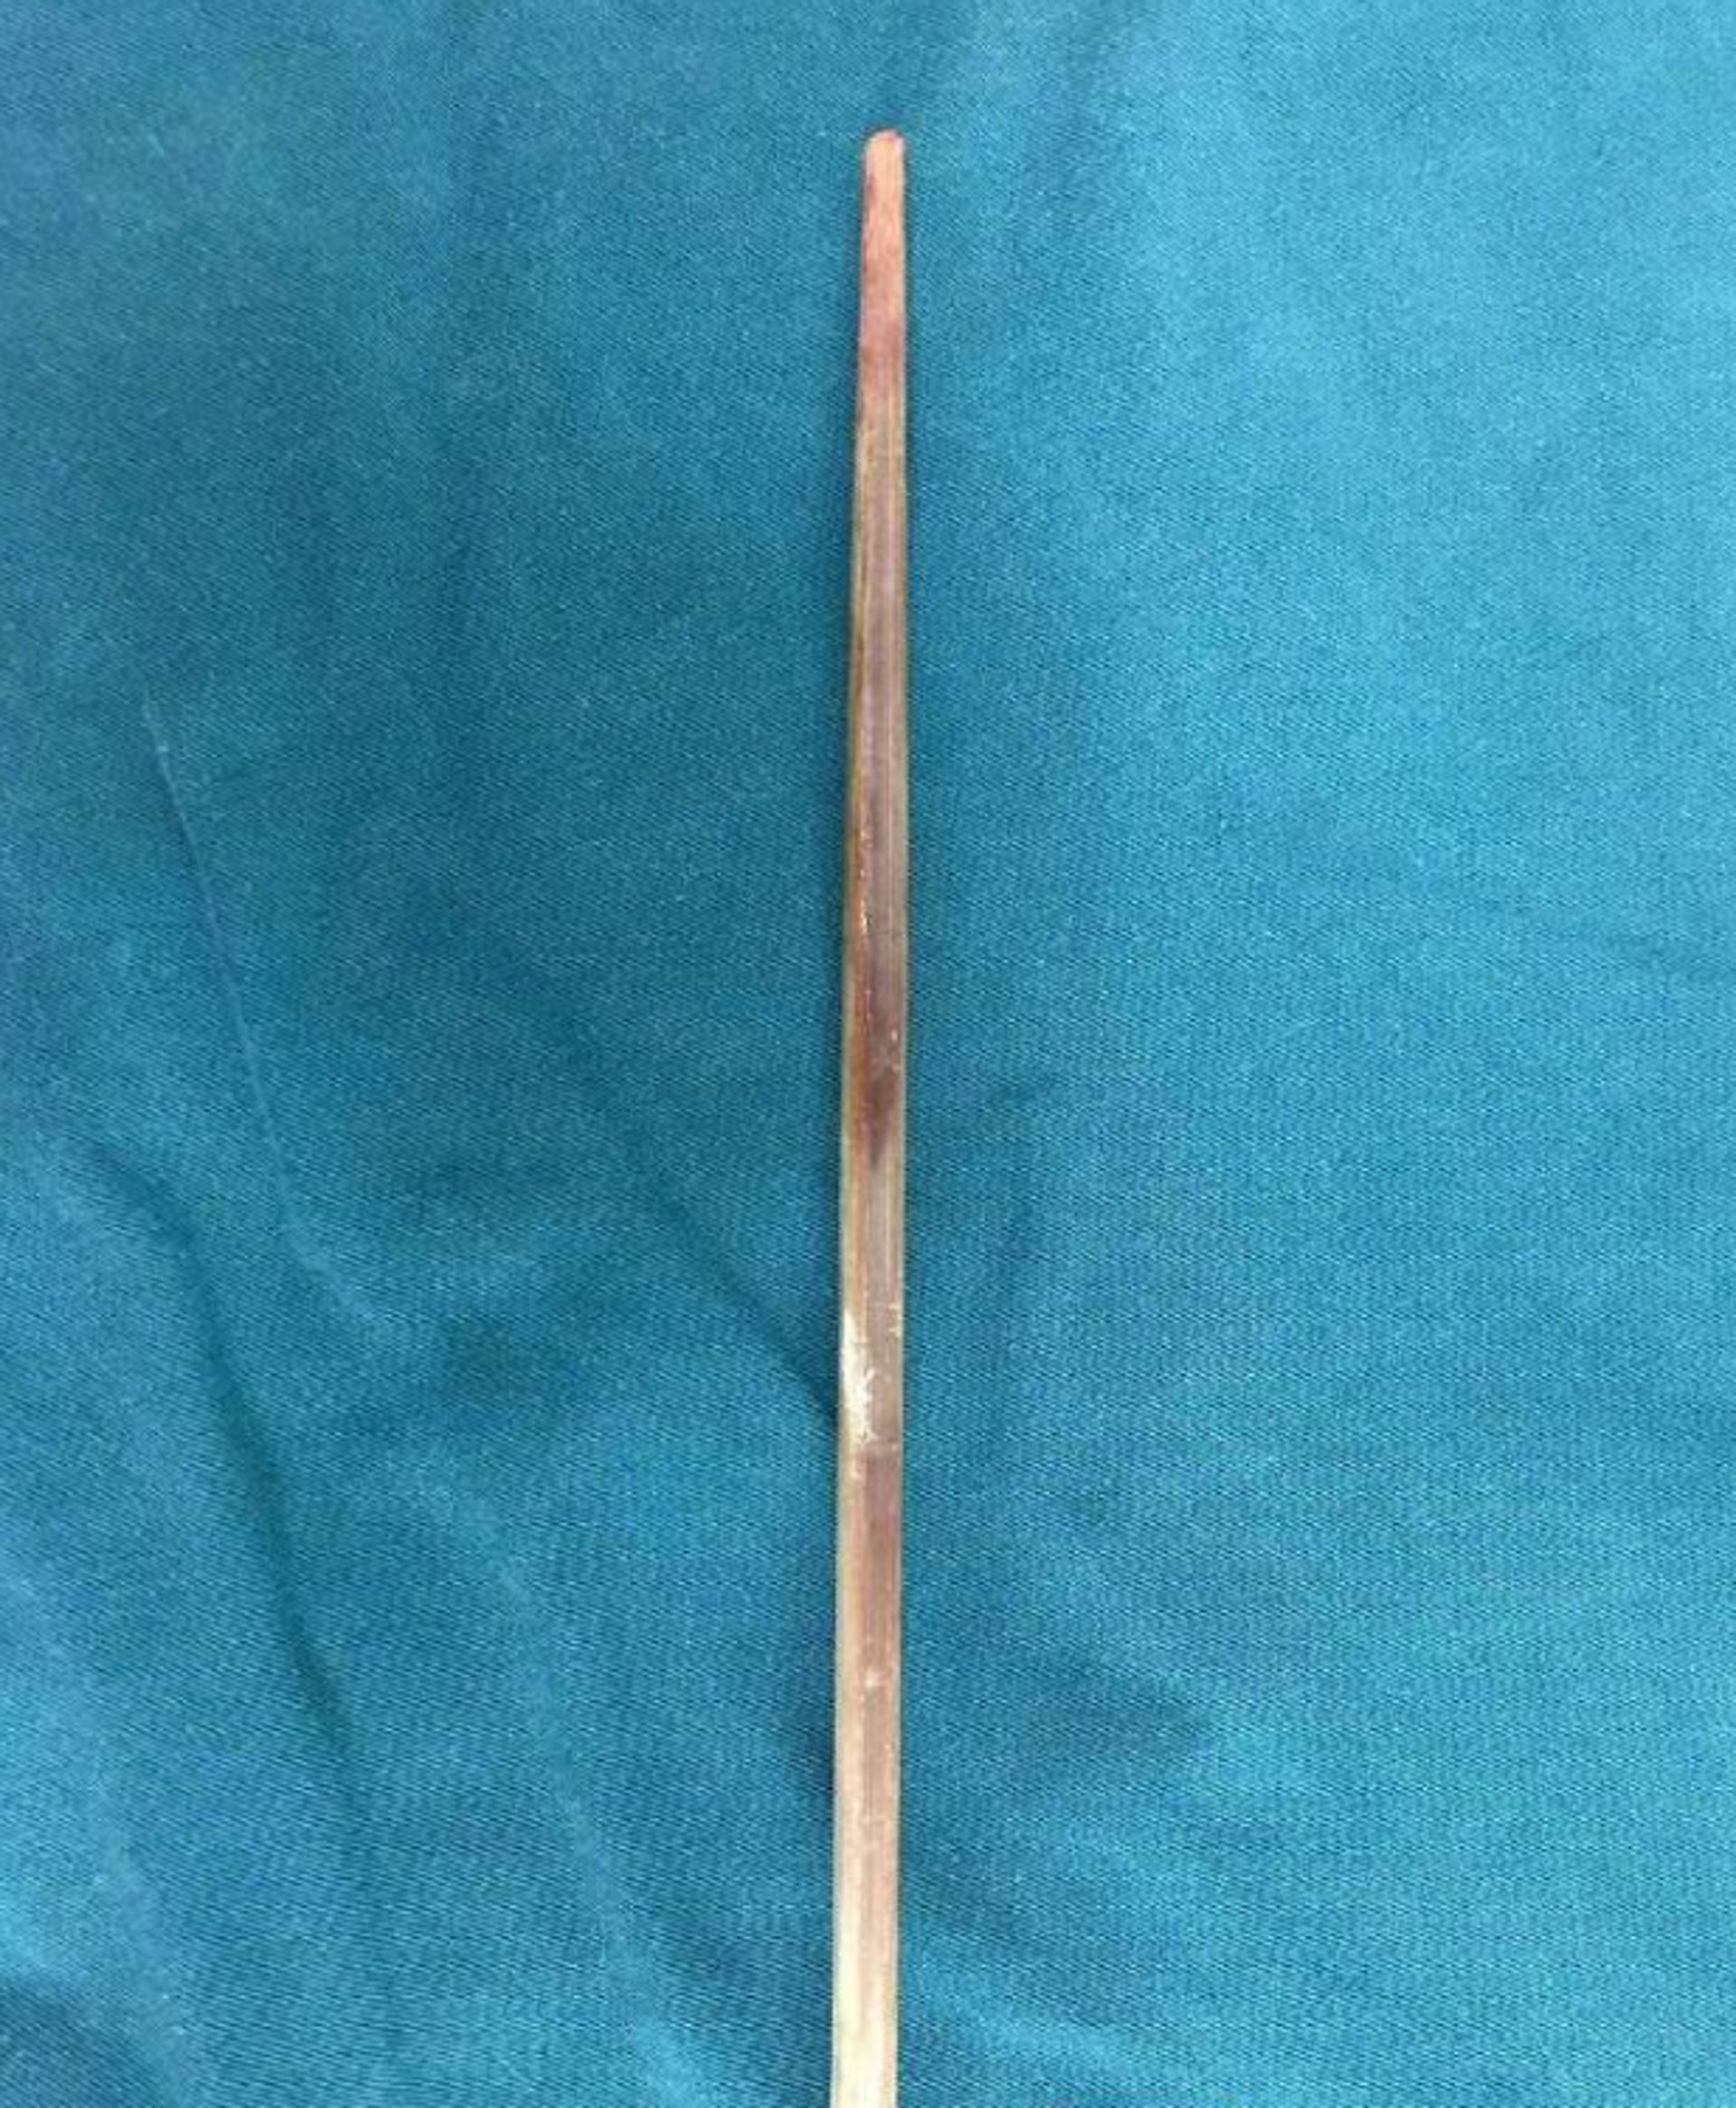 插進林林喉嚨的筷子足足有20厘米長，幸沒傷及食道和氣管。